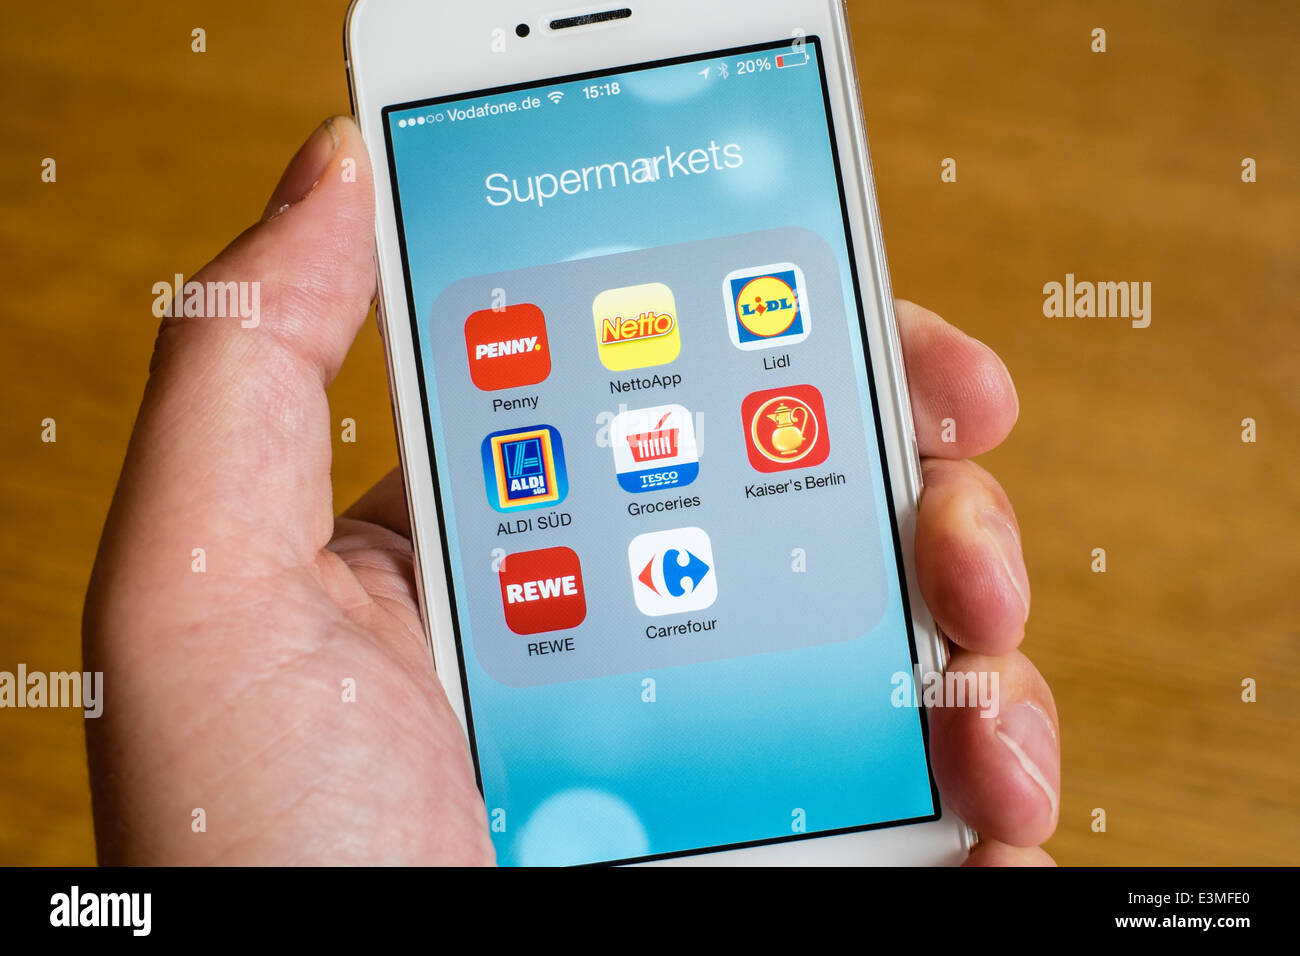 Dettaglio di molti sconto online shopping supermercato app su iPhone smart phone Foto Stock